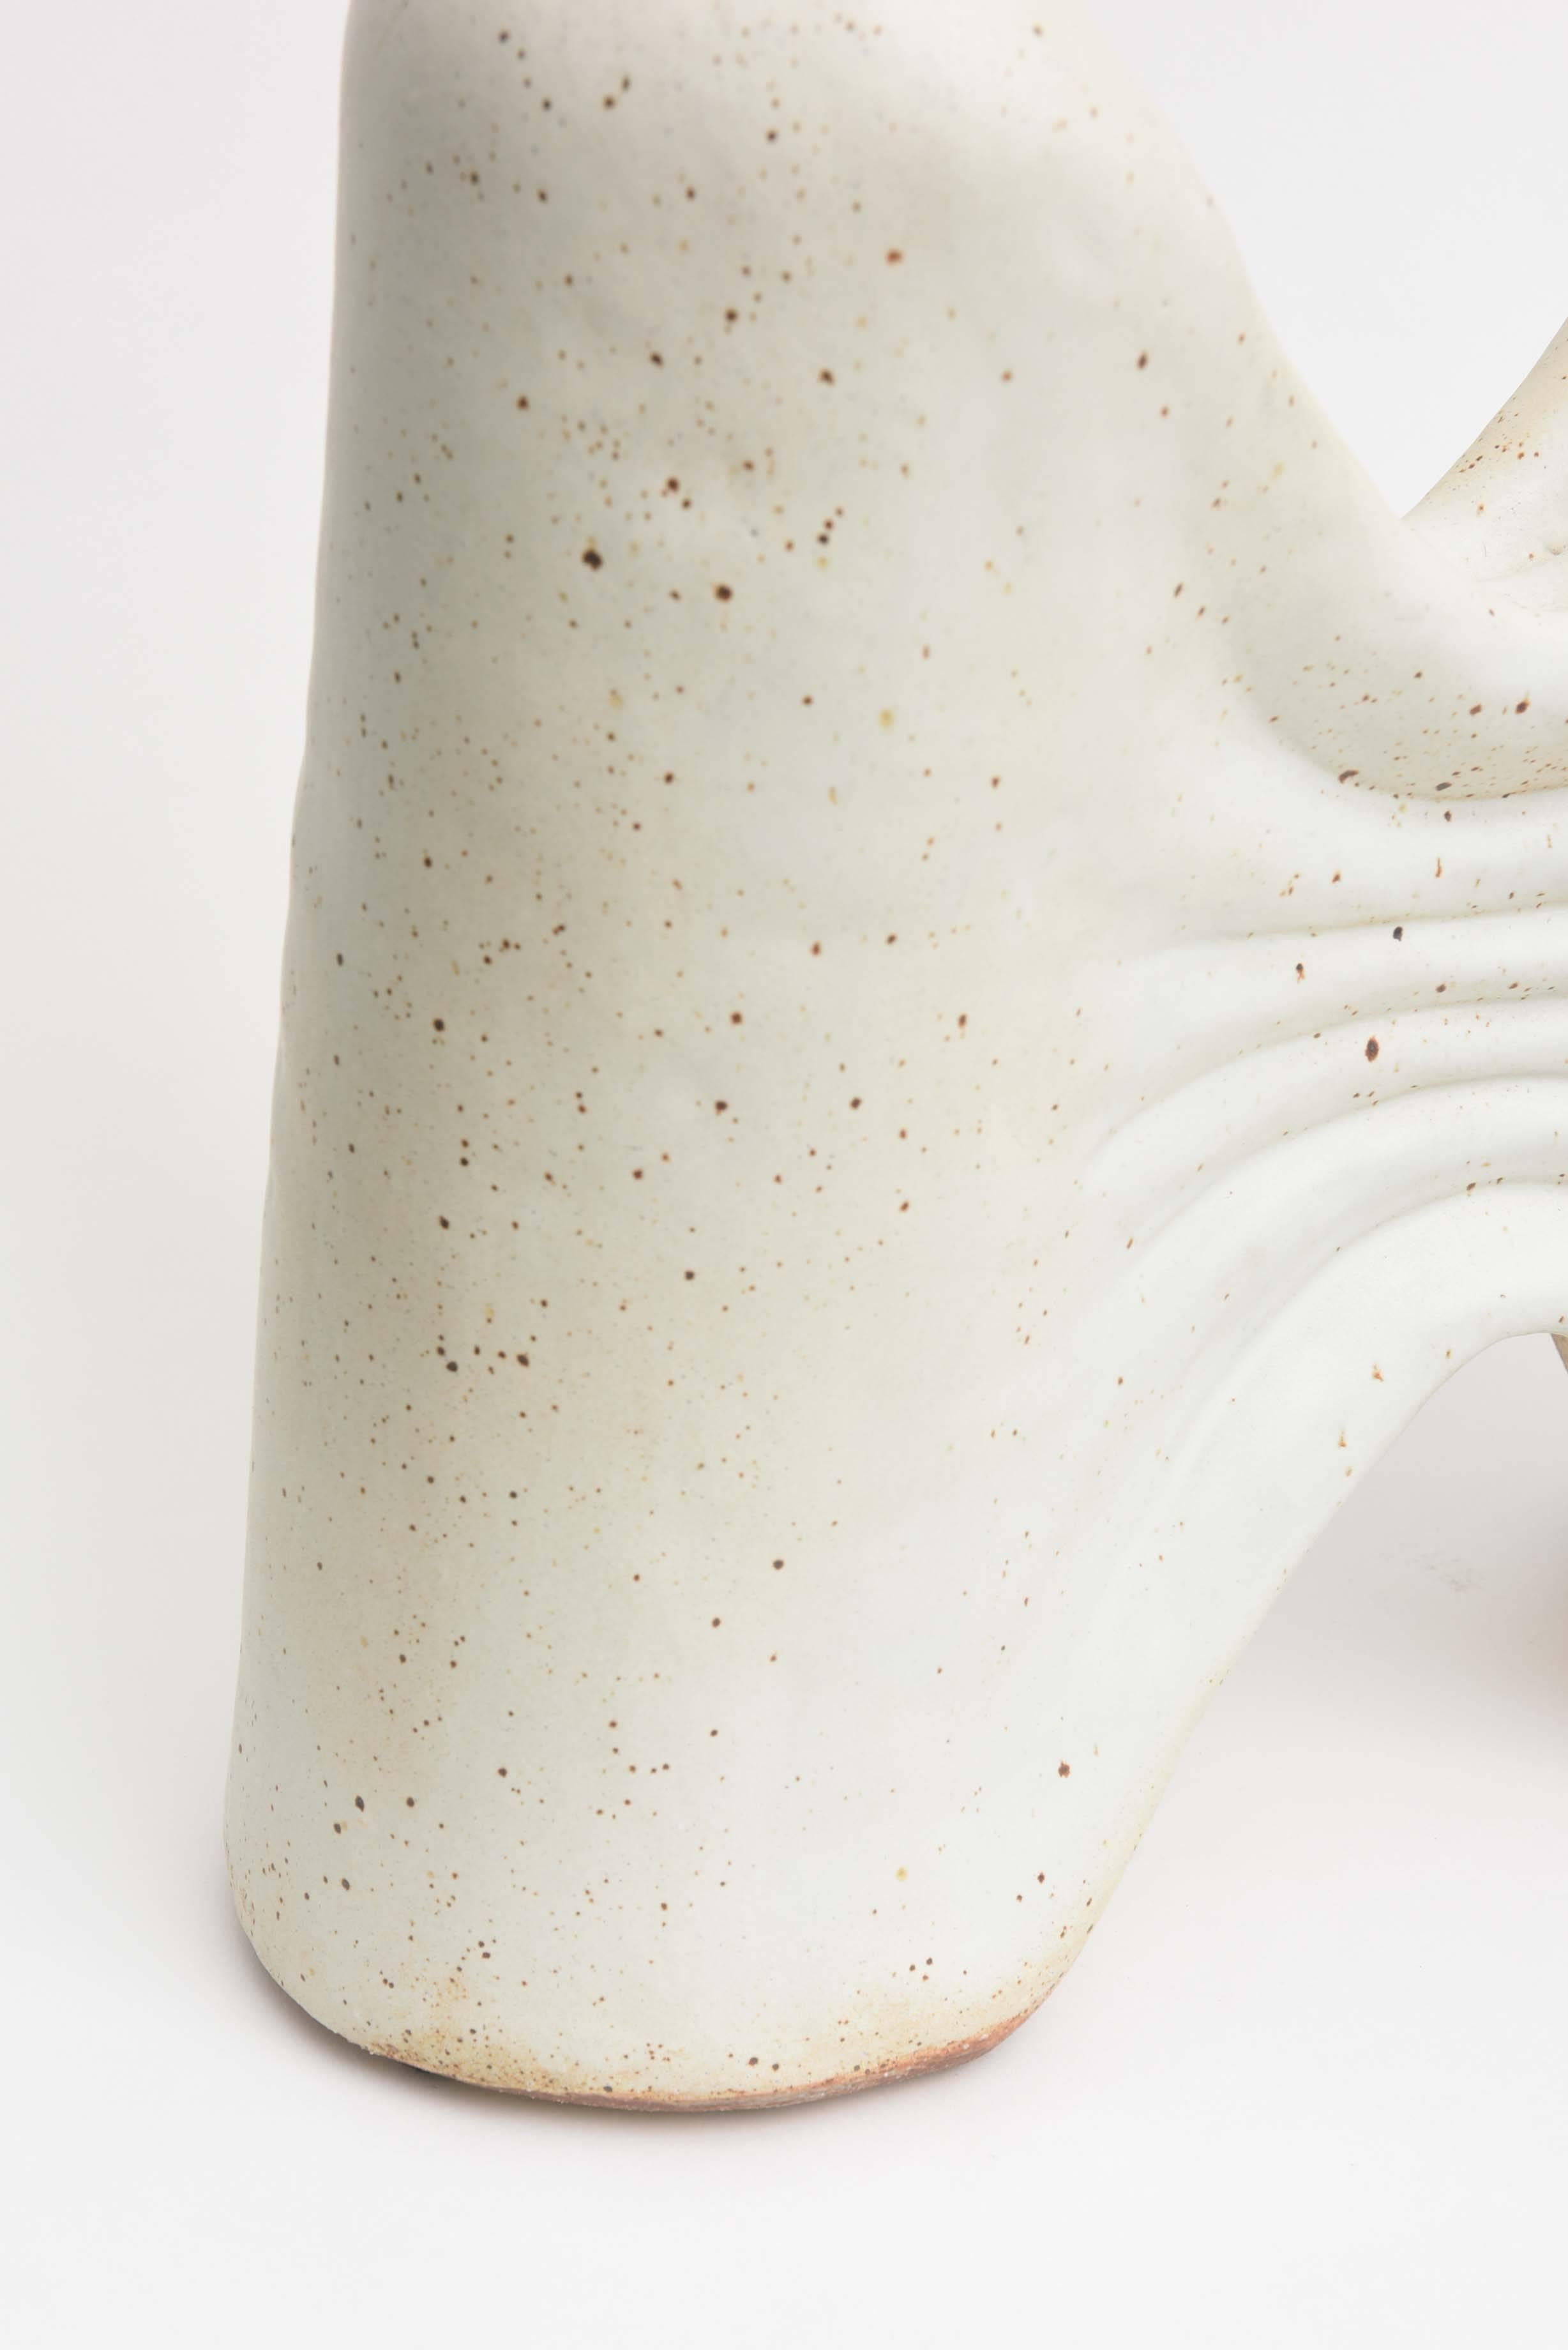 Contemporary American Modern Ceramic Vase/ Sculpture, Daric Harvie